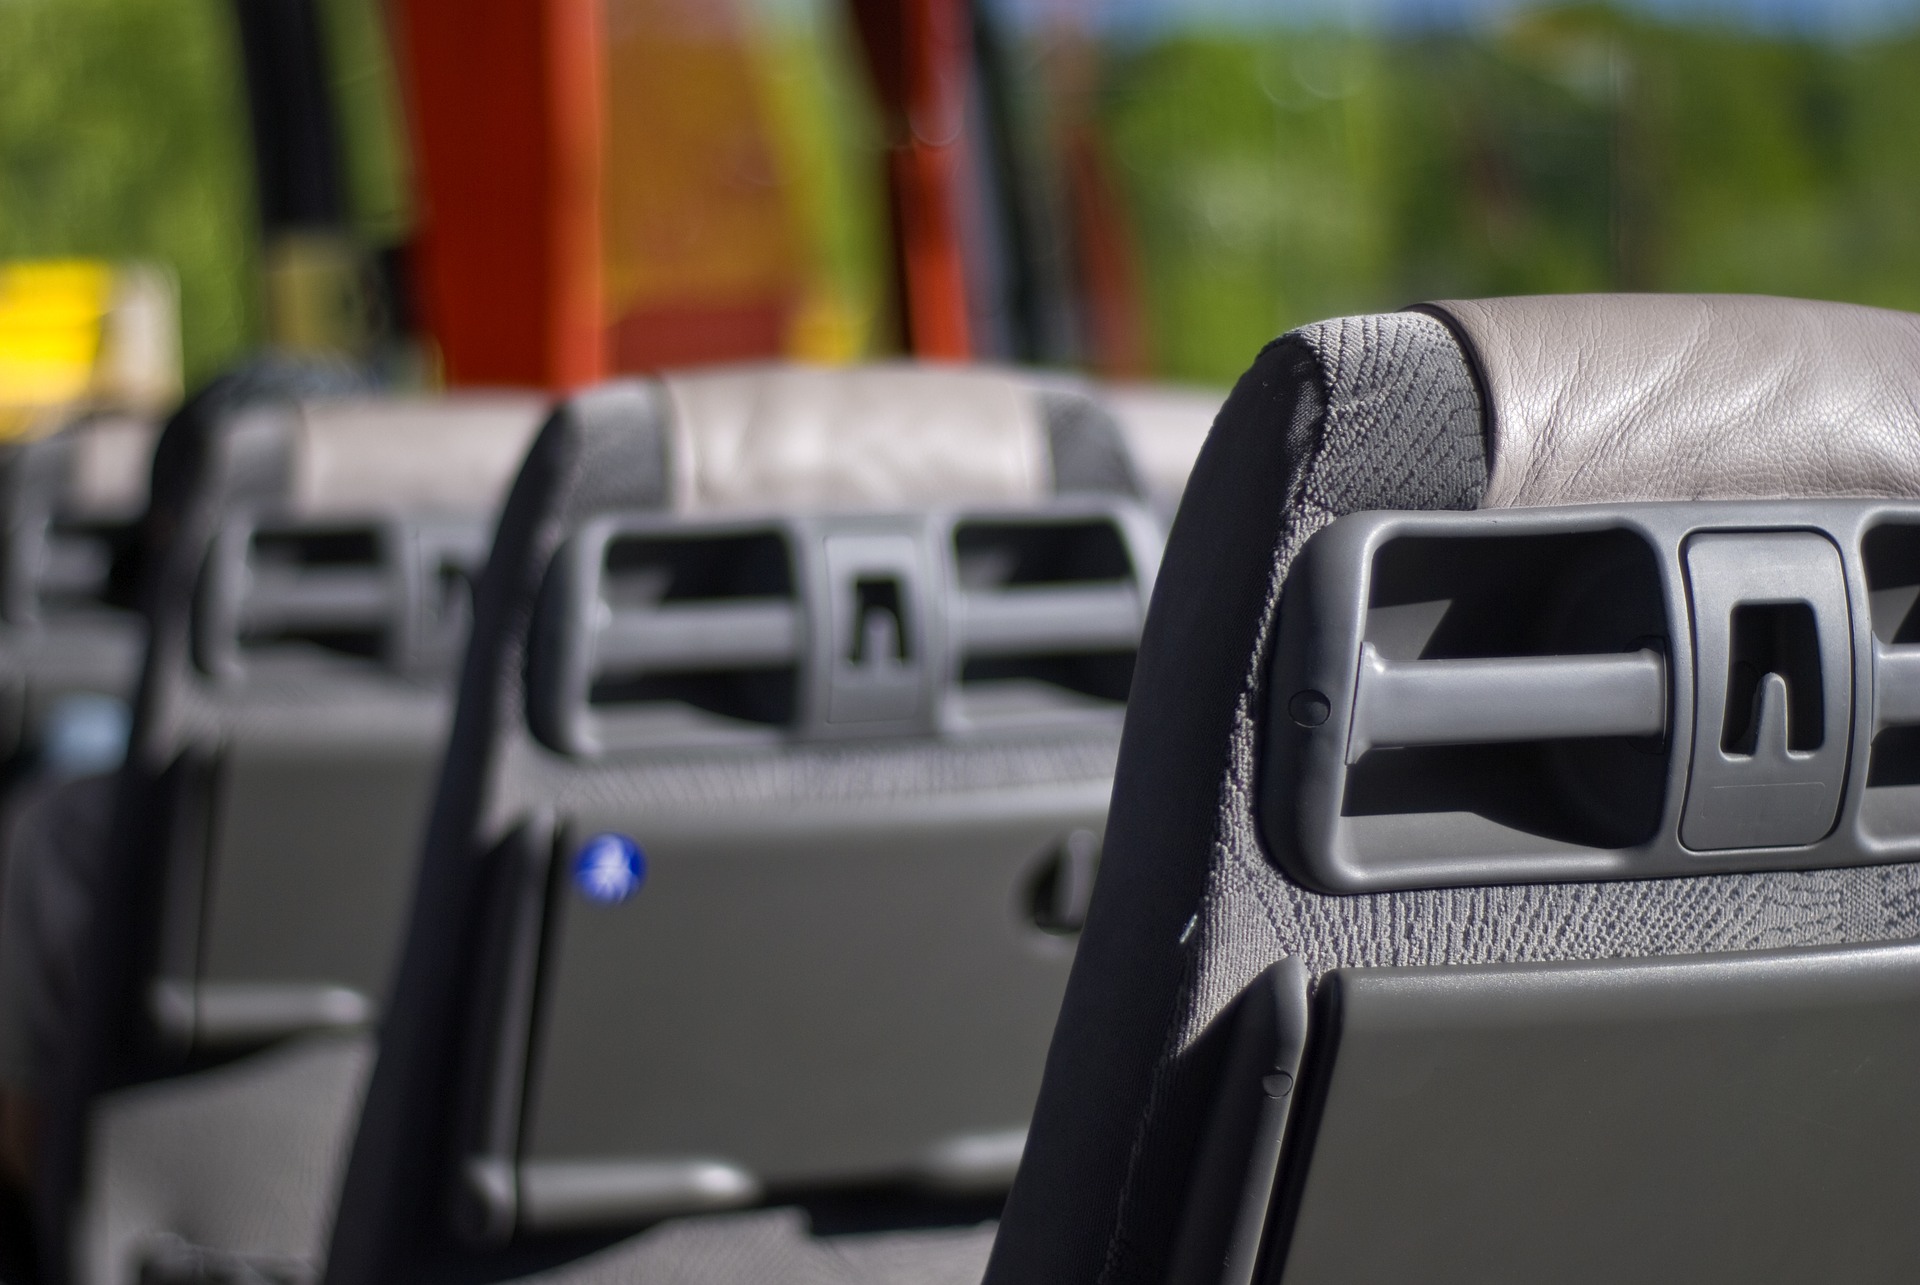 Sitze im Inneren eines Reisebusses